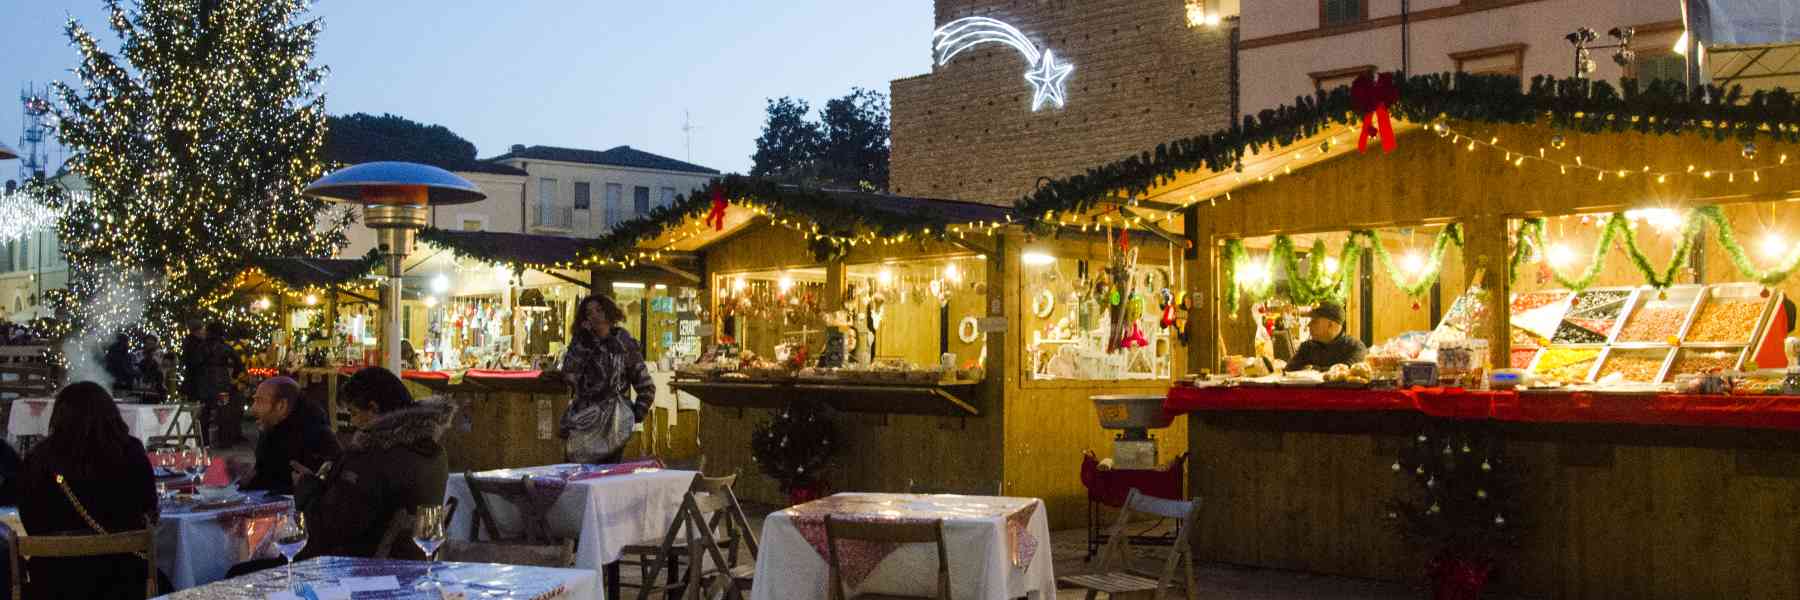 Il villaggio di Natale in centro a Cervia